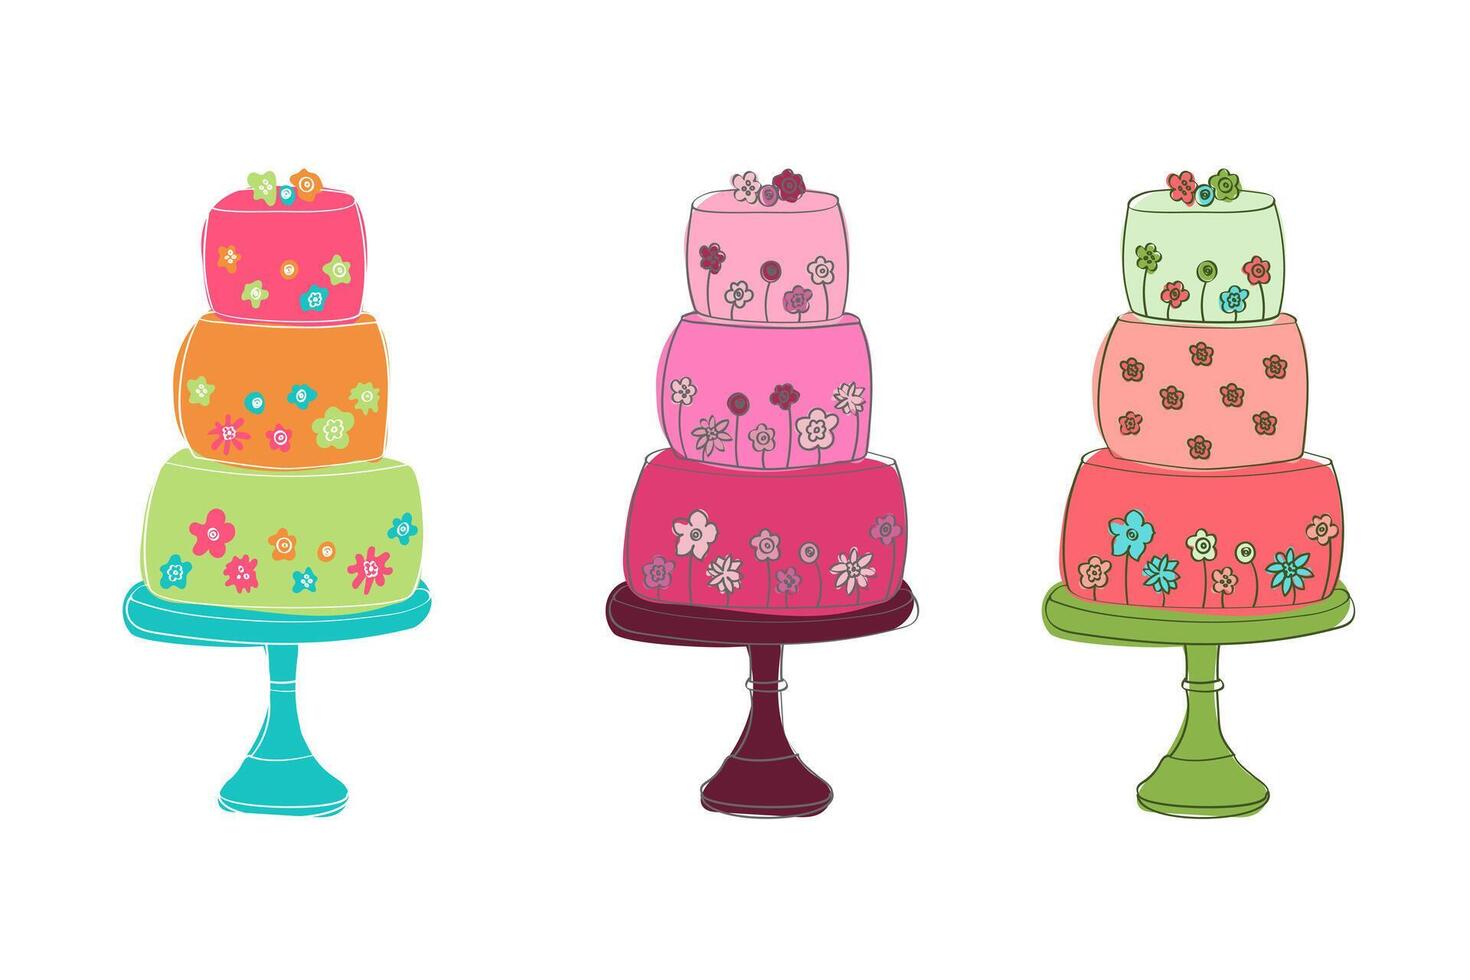 tre torte di diverso colori siamo posto su superiore di ogni Altro, la creazione di un' colorato e visivamente attraente pila vettore